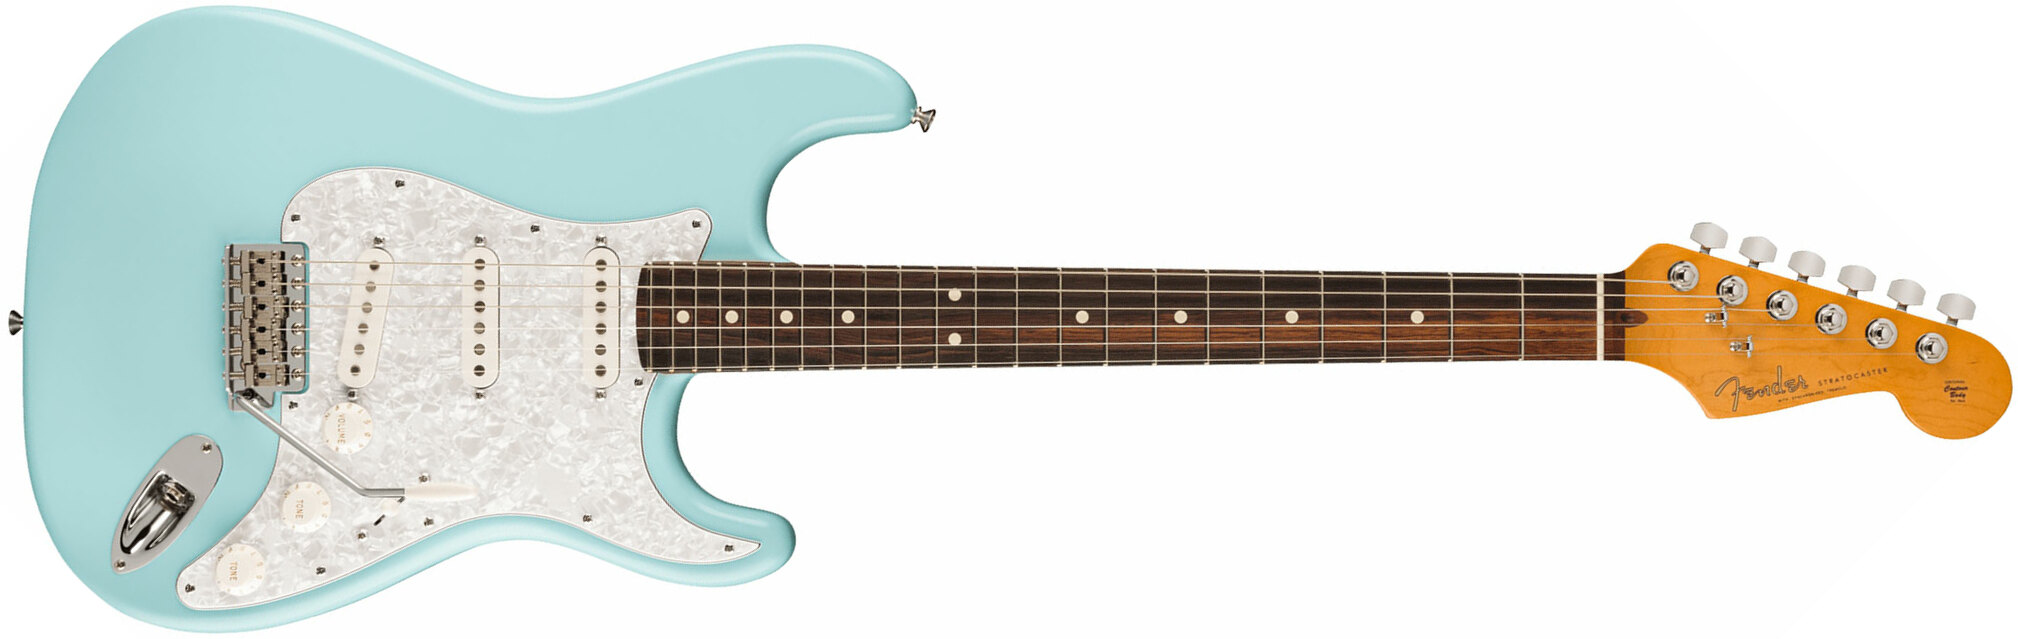 Fender Cory Wong Strat Ltd Signature Usa Stss Trem Rw - Daphne Blue - Elektrische gitaar in Str-vorm - Main picture